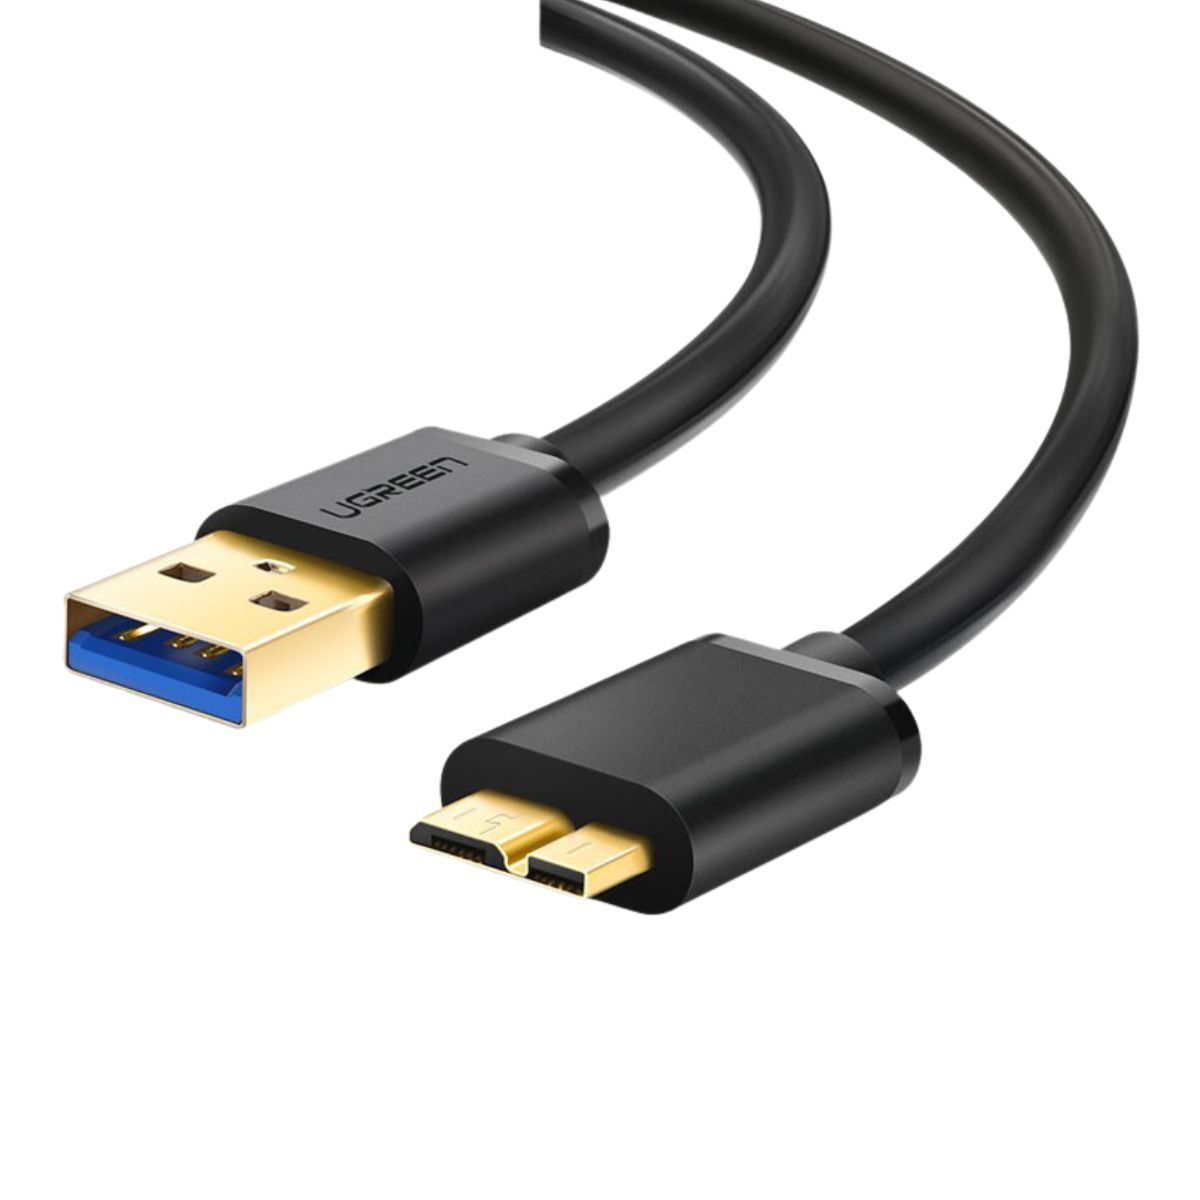 Dây cáp USB 3.0 sang Micro USB 3.0 Ugreen 10840 US130 chiều dài 50cm, màu đen, tốc độ lên đến 5Gbps